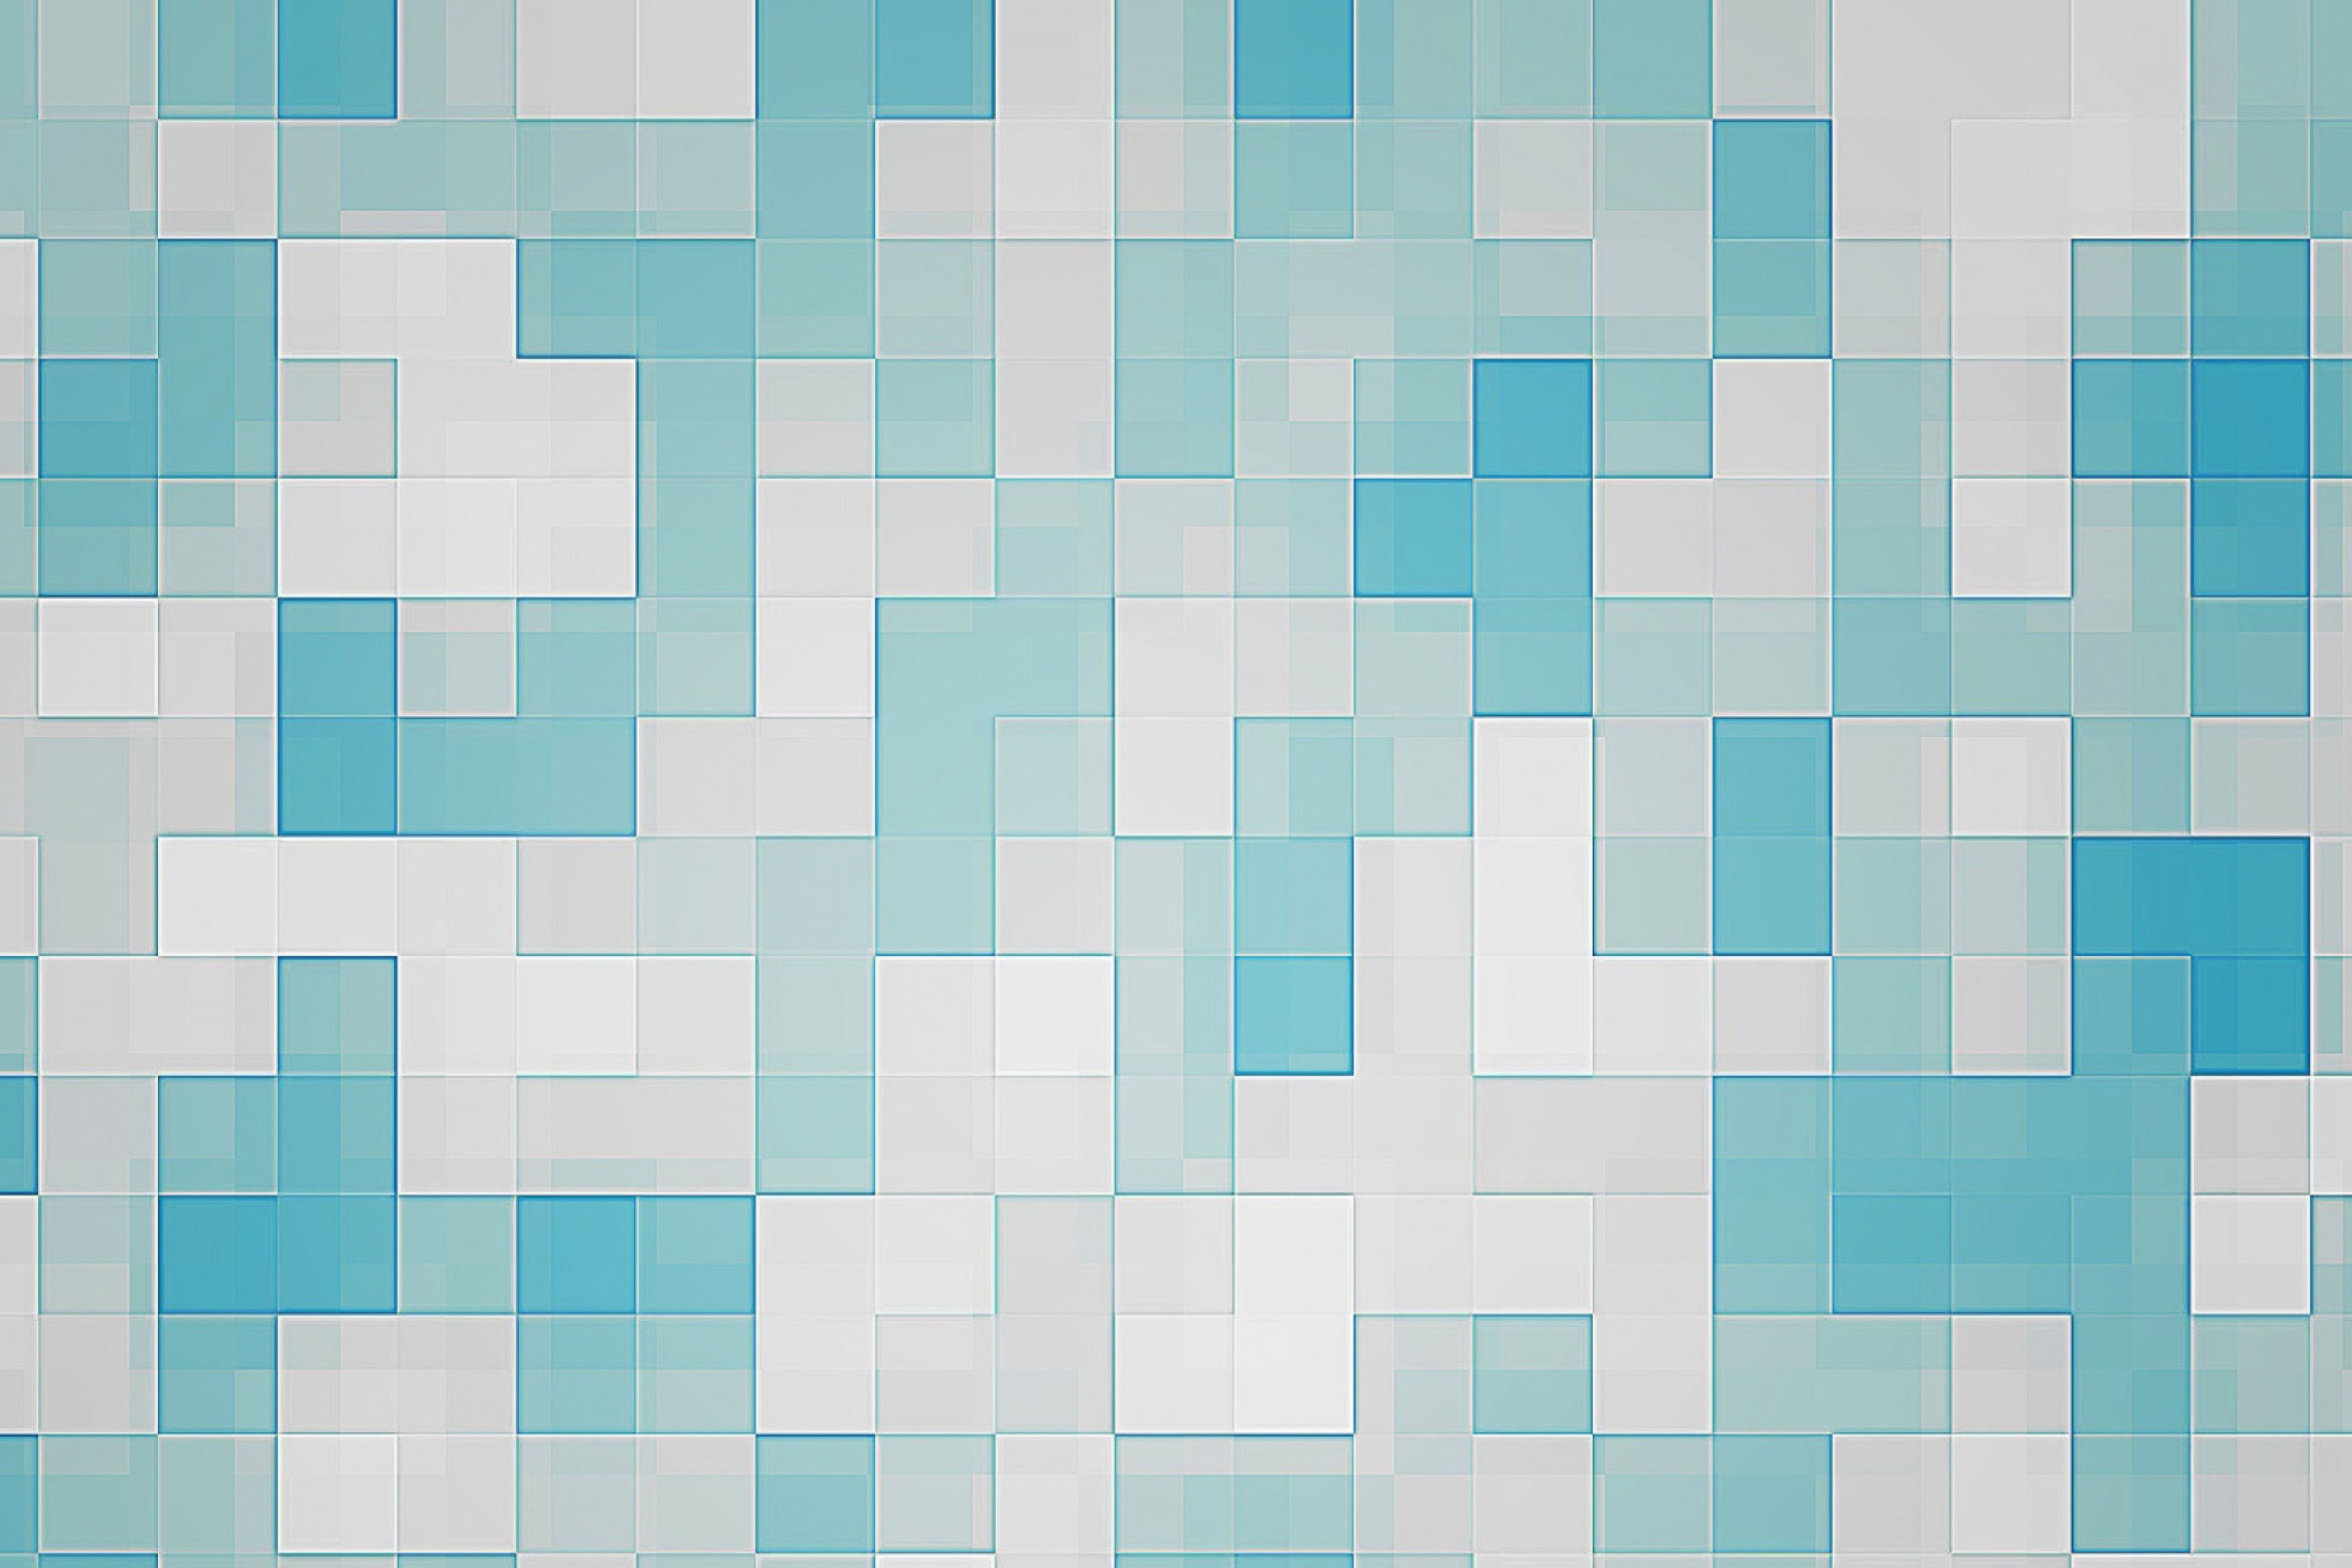 Das Mosaic Wallpaper 2880x1920